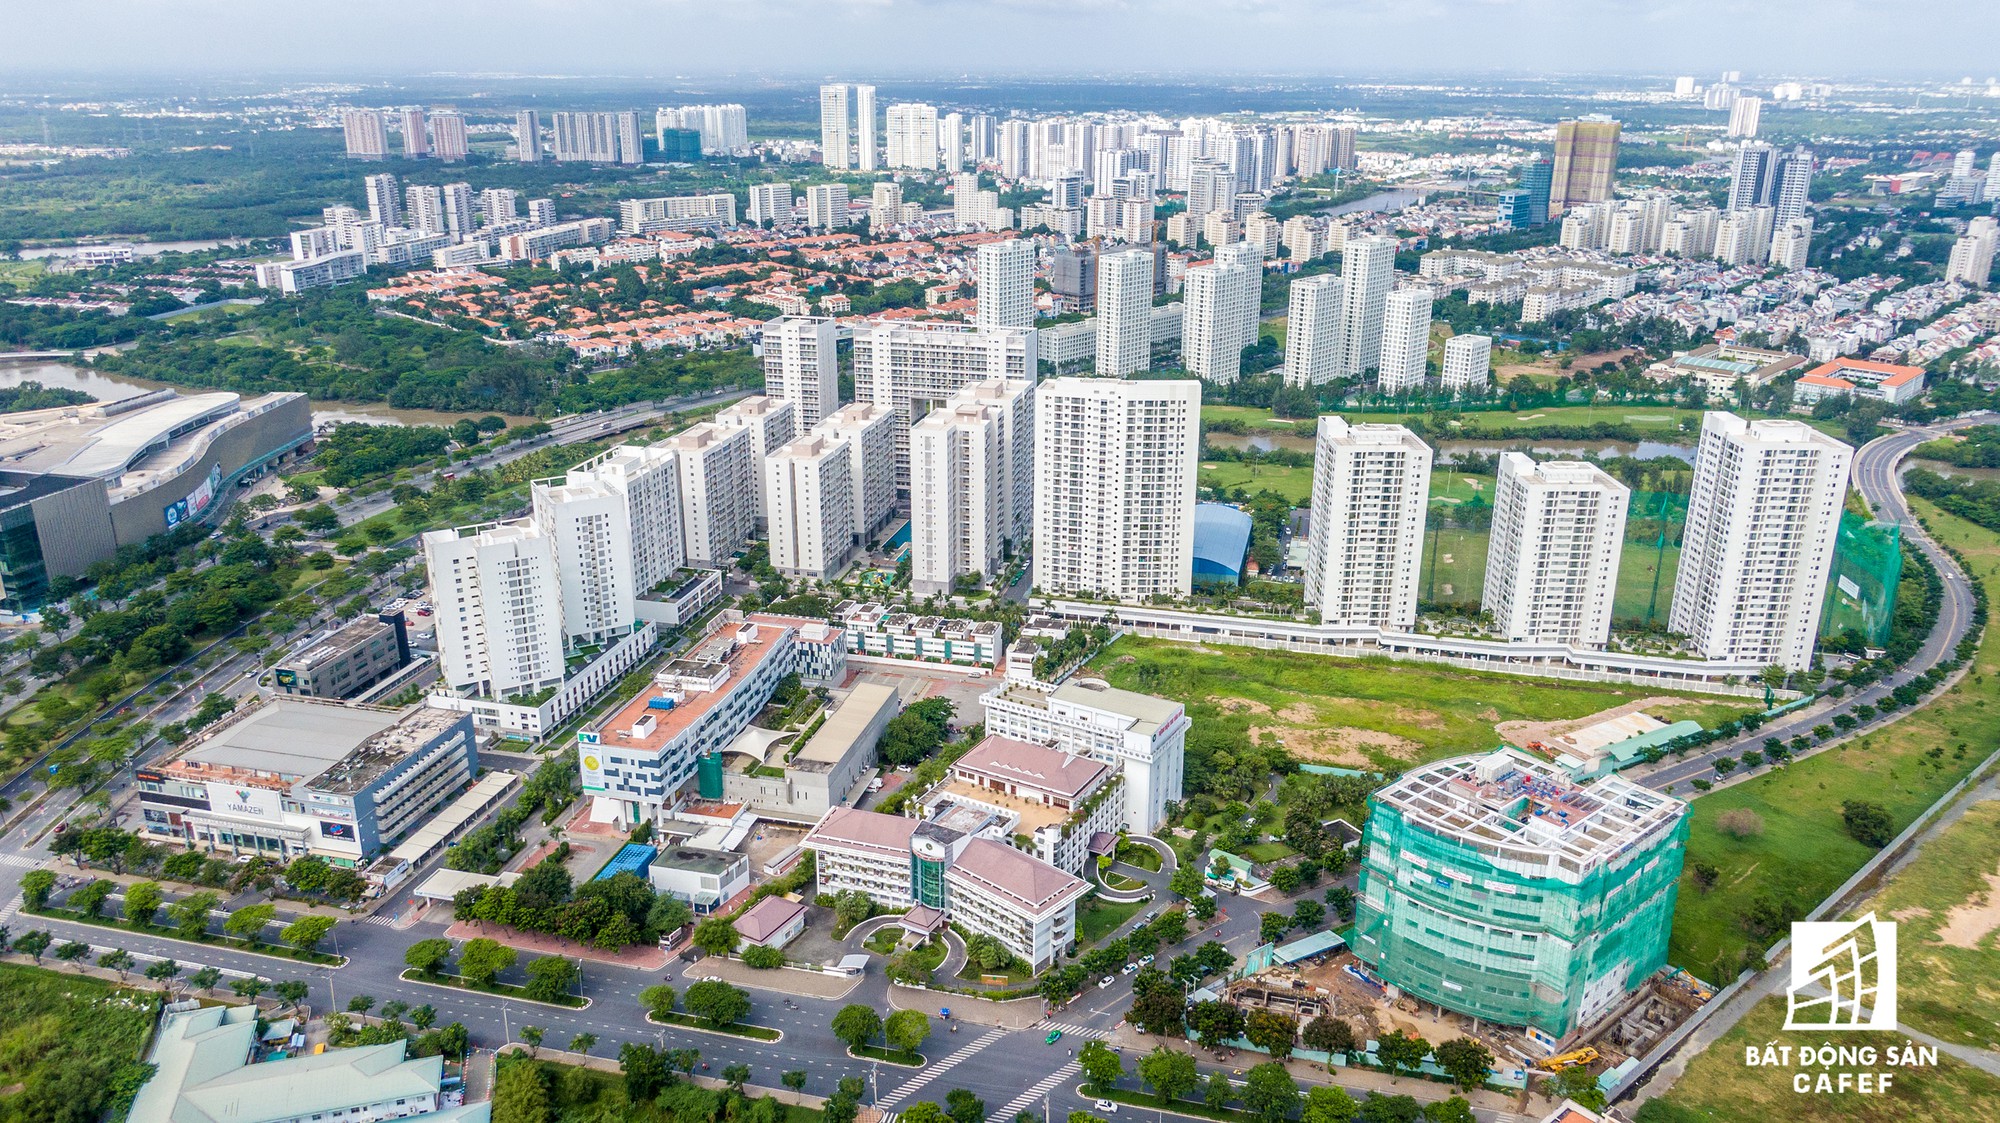 Toàn cảnh đại lộ tỷ đô đã tạo nên một thị trường bất động sản rất riêng cho khu Nam Sài Gòn - Ảnh 13.